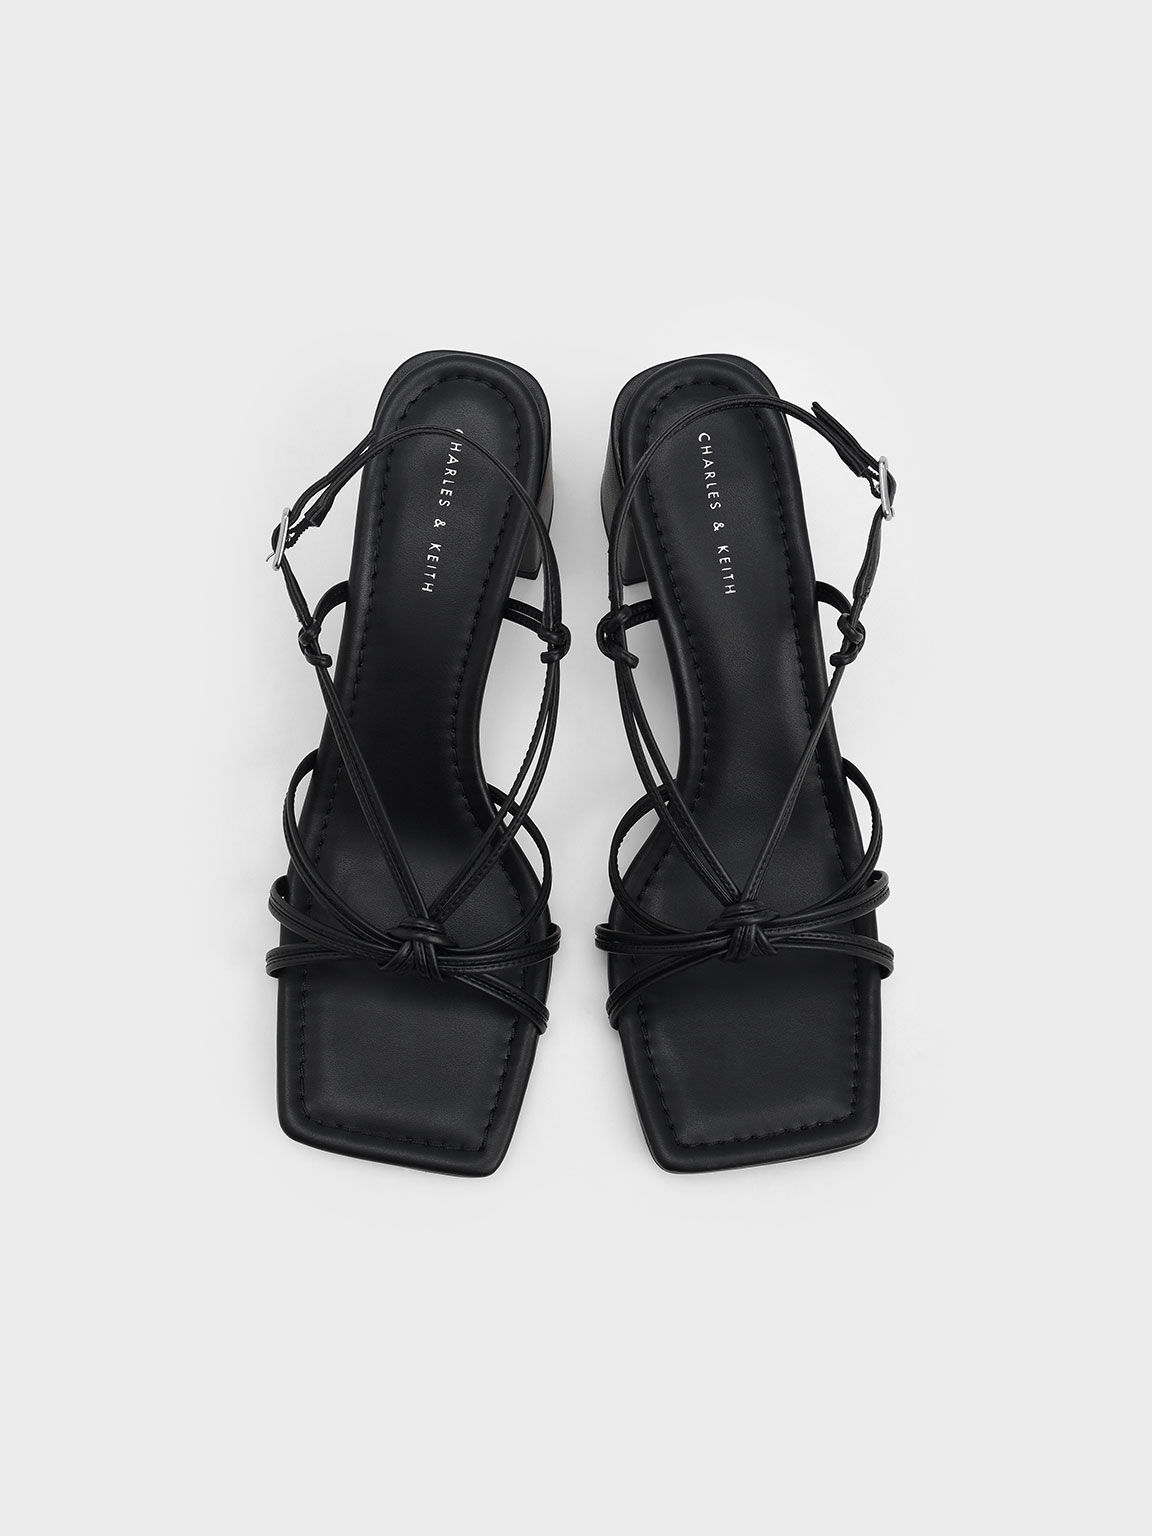 Knotted Slingback Heeled Sandals, Black, hi-res